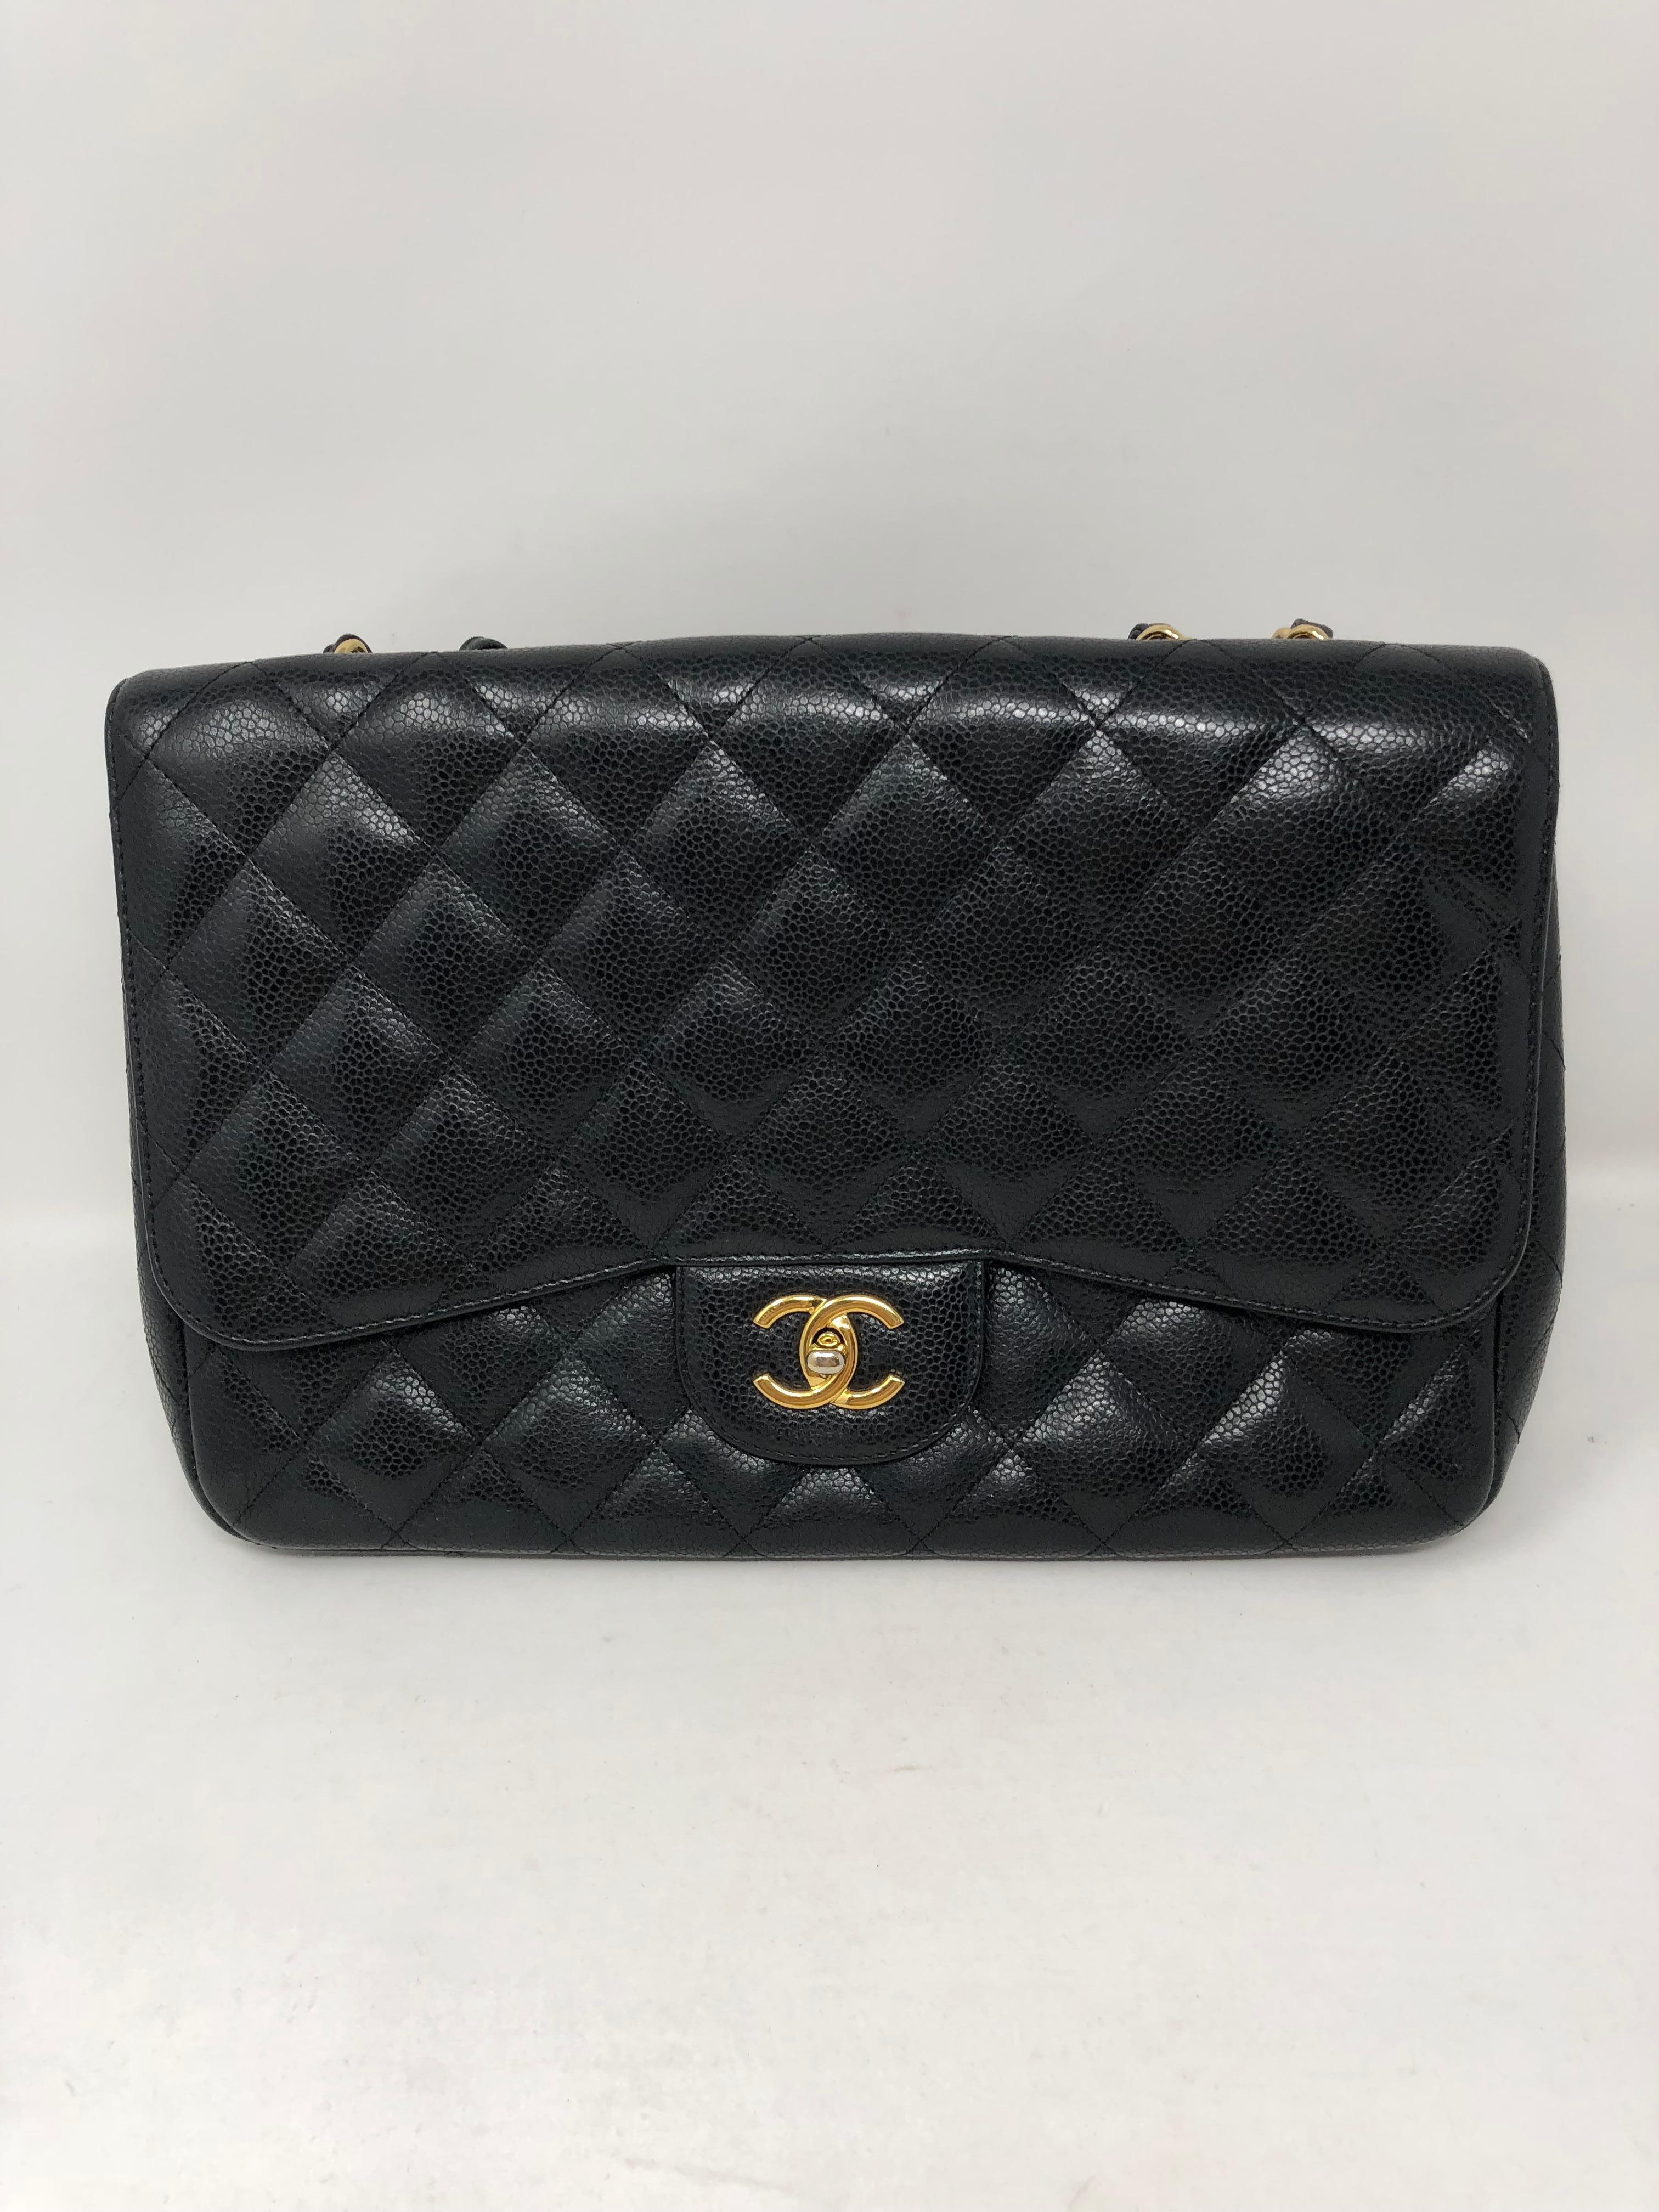 Chanel Black Caviar Jumbo Bag 1